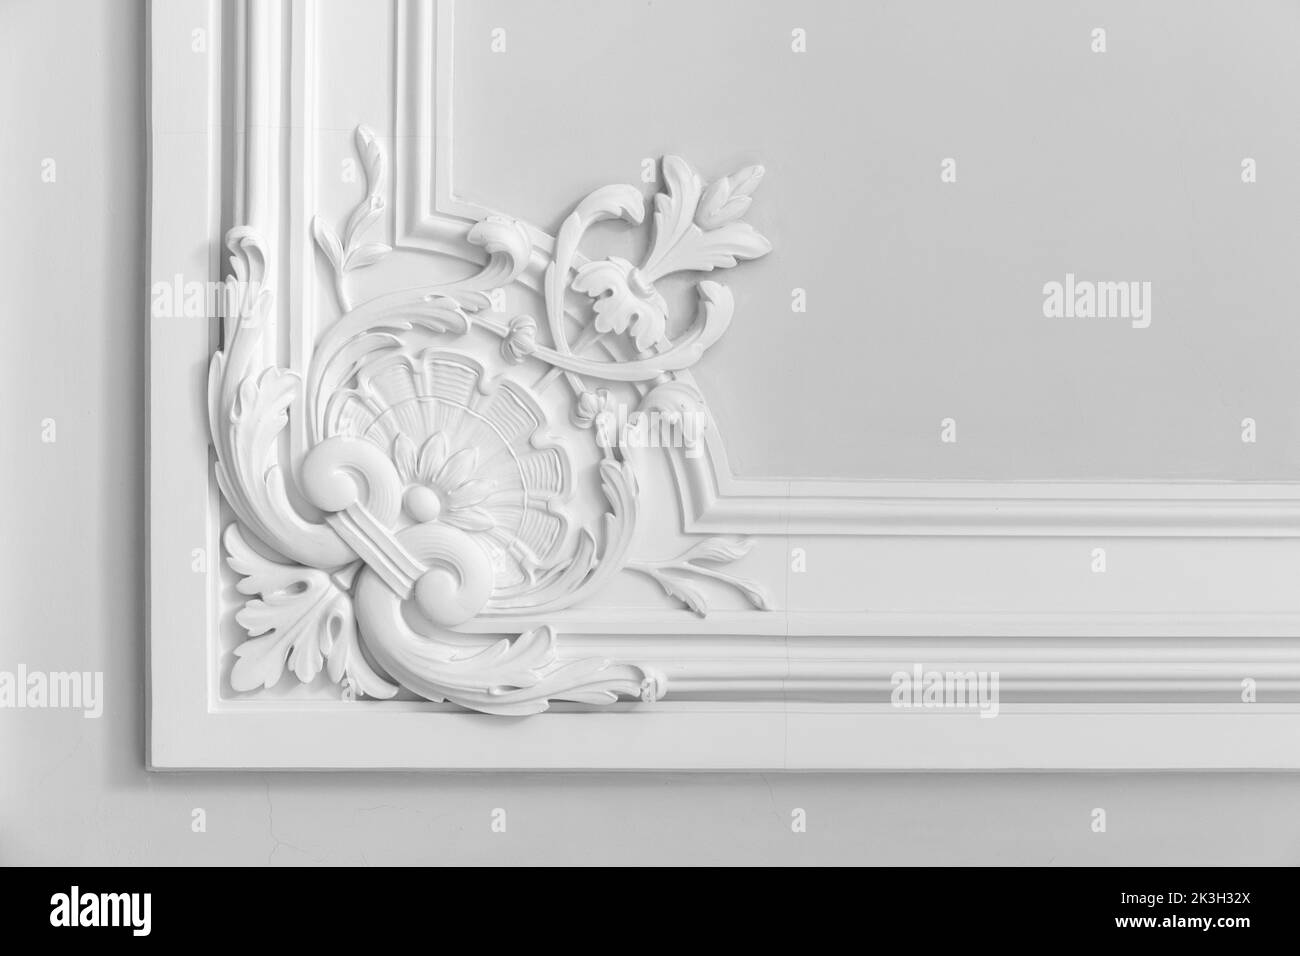 Pared blanca con decoración clásica de estuco, fragmento interior abstracto con patrón floral en una esquina Foto de stock